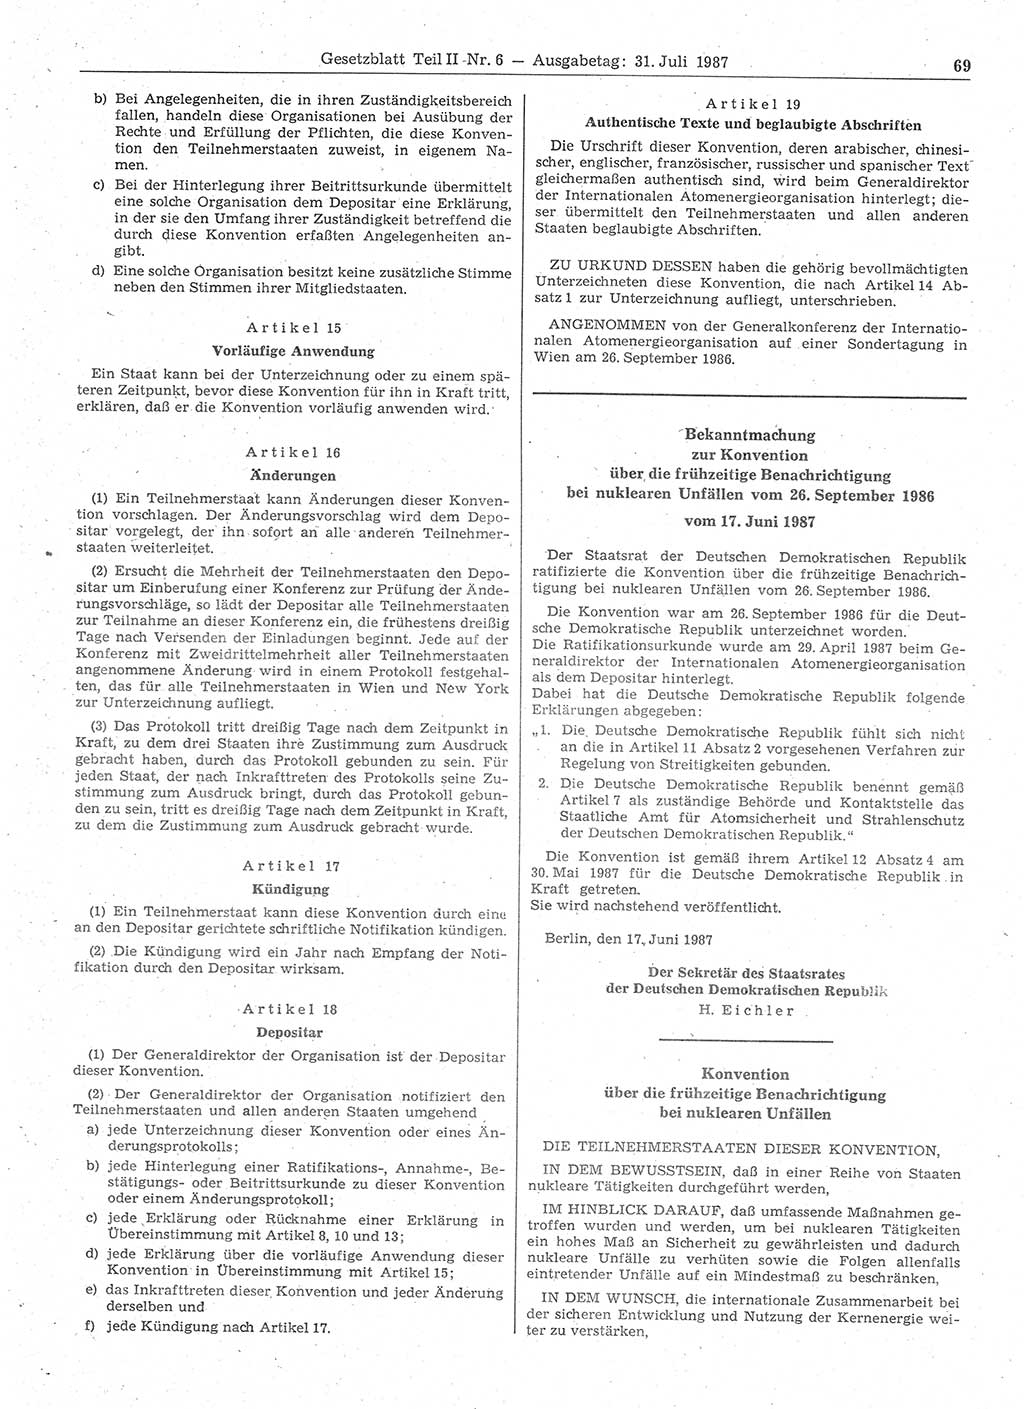 Gesetzblatt (GBl.) der Deutschen Demokratischen Republik (DDR) Teil ⅠⅠ 1987, Seite 69 (GBl. DDR ⅠⅠ 1987, S. 69)